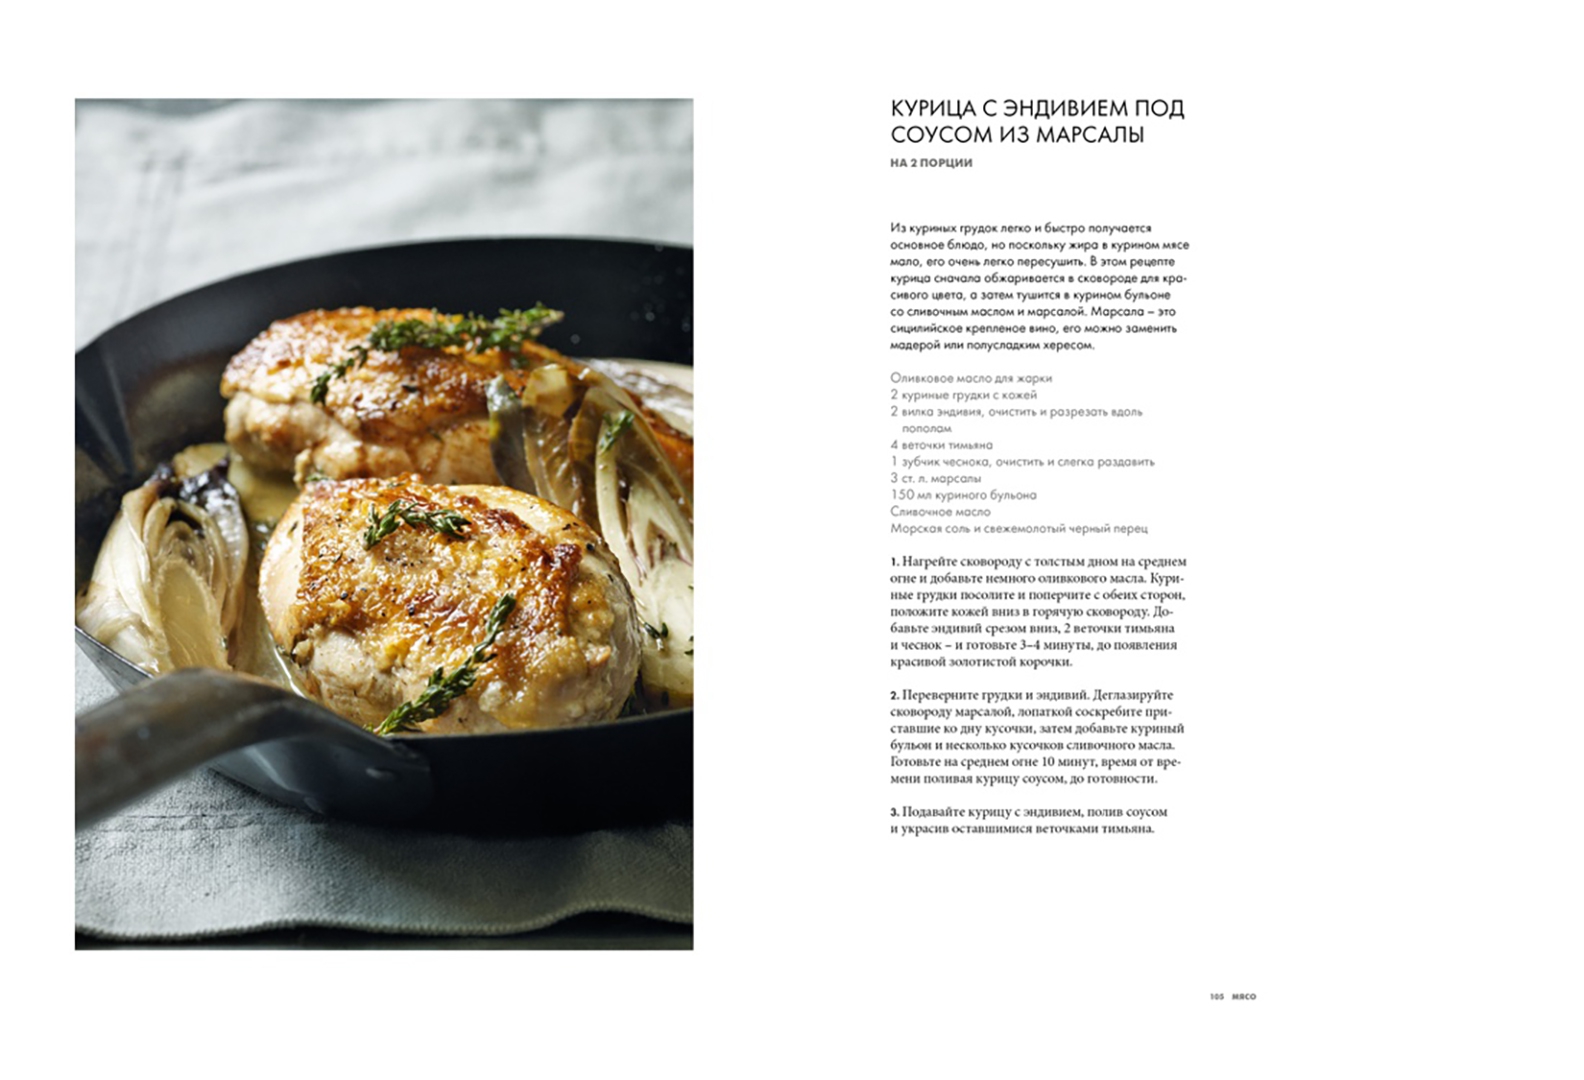 Иллюстрация 7 из 36 для Курс элементарной кулинарии. Готовим уверенно - Гордон Рамзи | Лабиринт - книги. Источник: Лабиринт